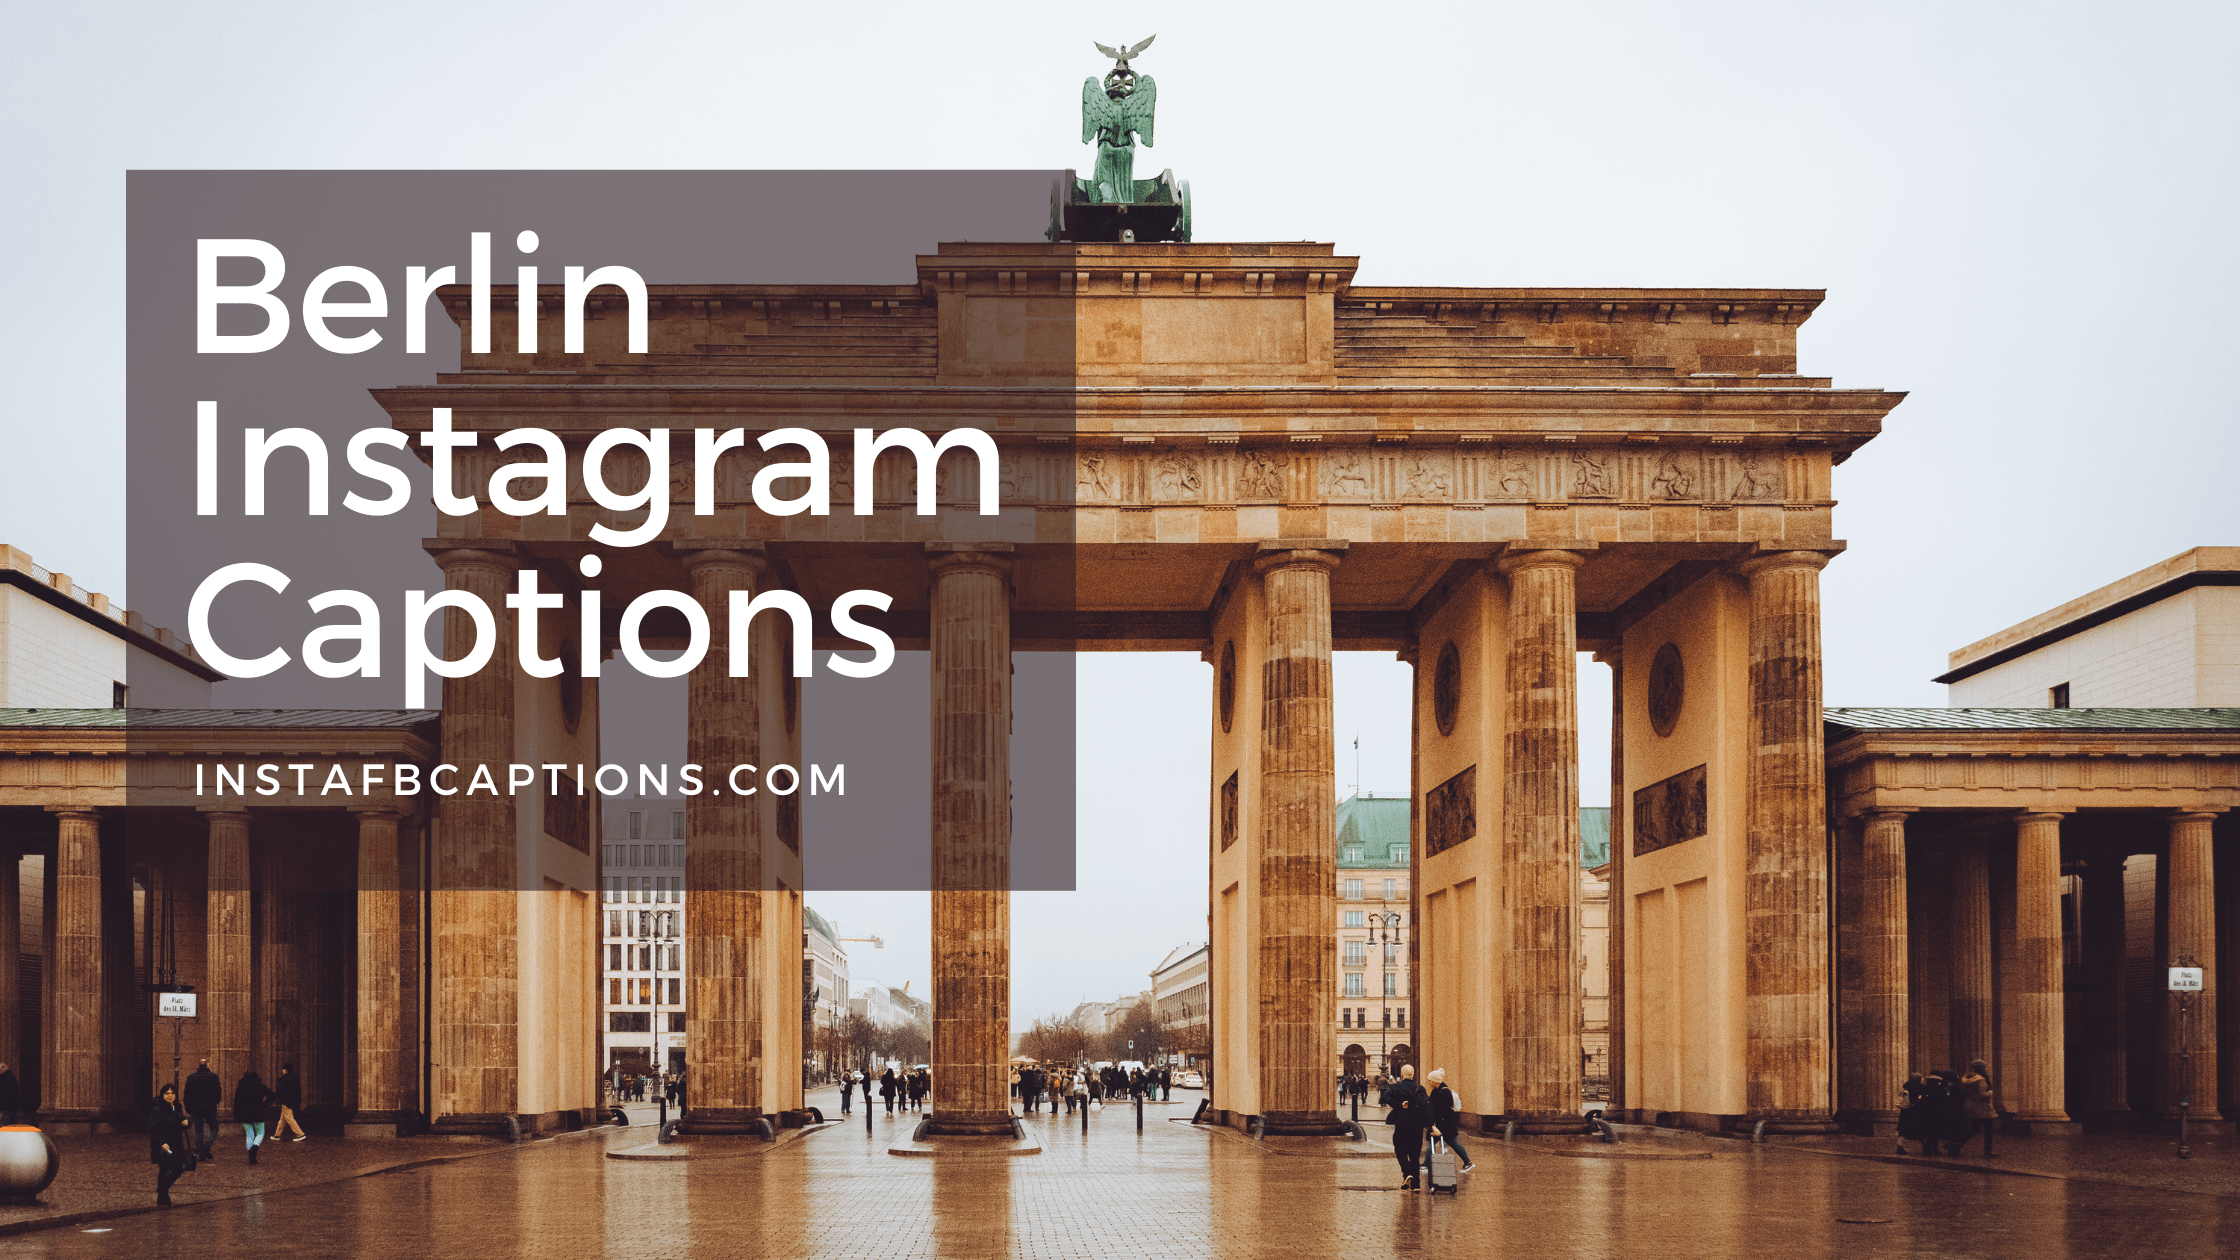 Berlin Instagram Captions  - Berlin Instagram Captions - [New] Berlin Instagram Captions, Quotes and Bios in 2023